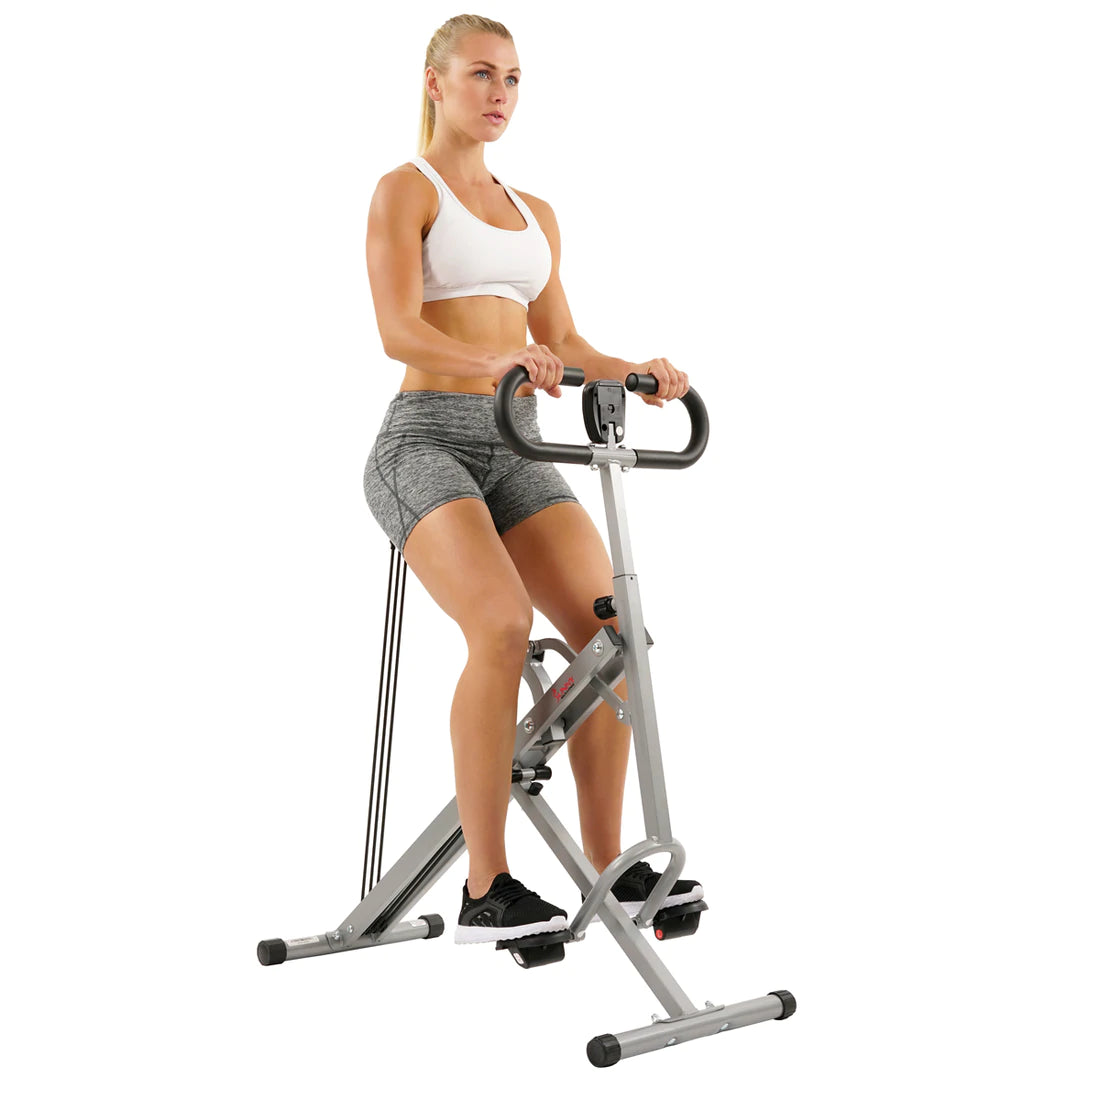 Sunny Health & Fitness Upright Row-N-Ride Exerciser – Thegreatsauna